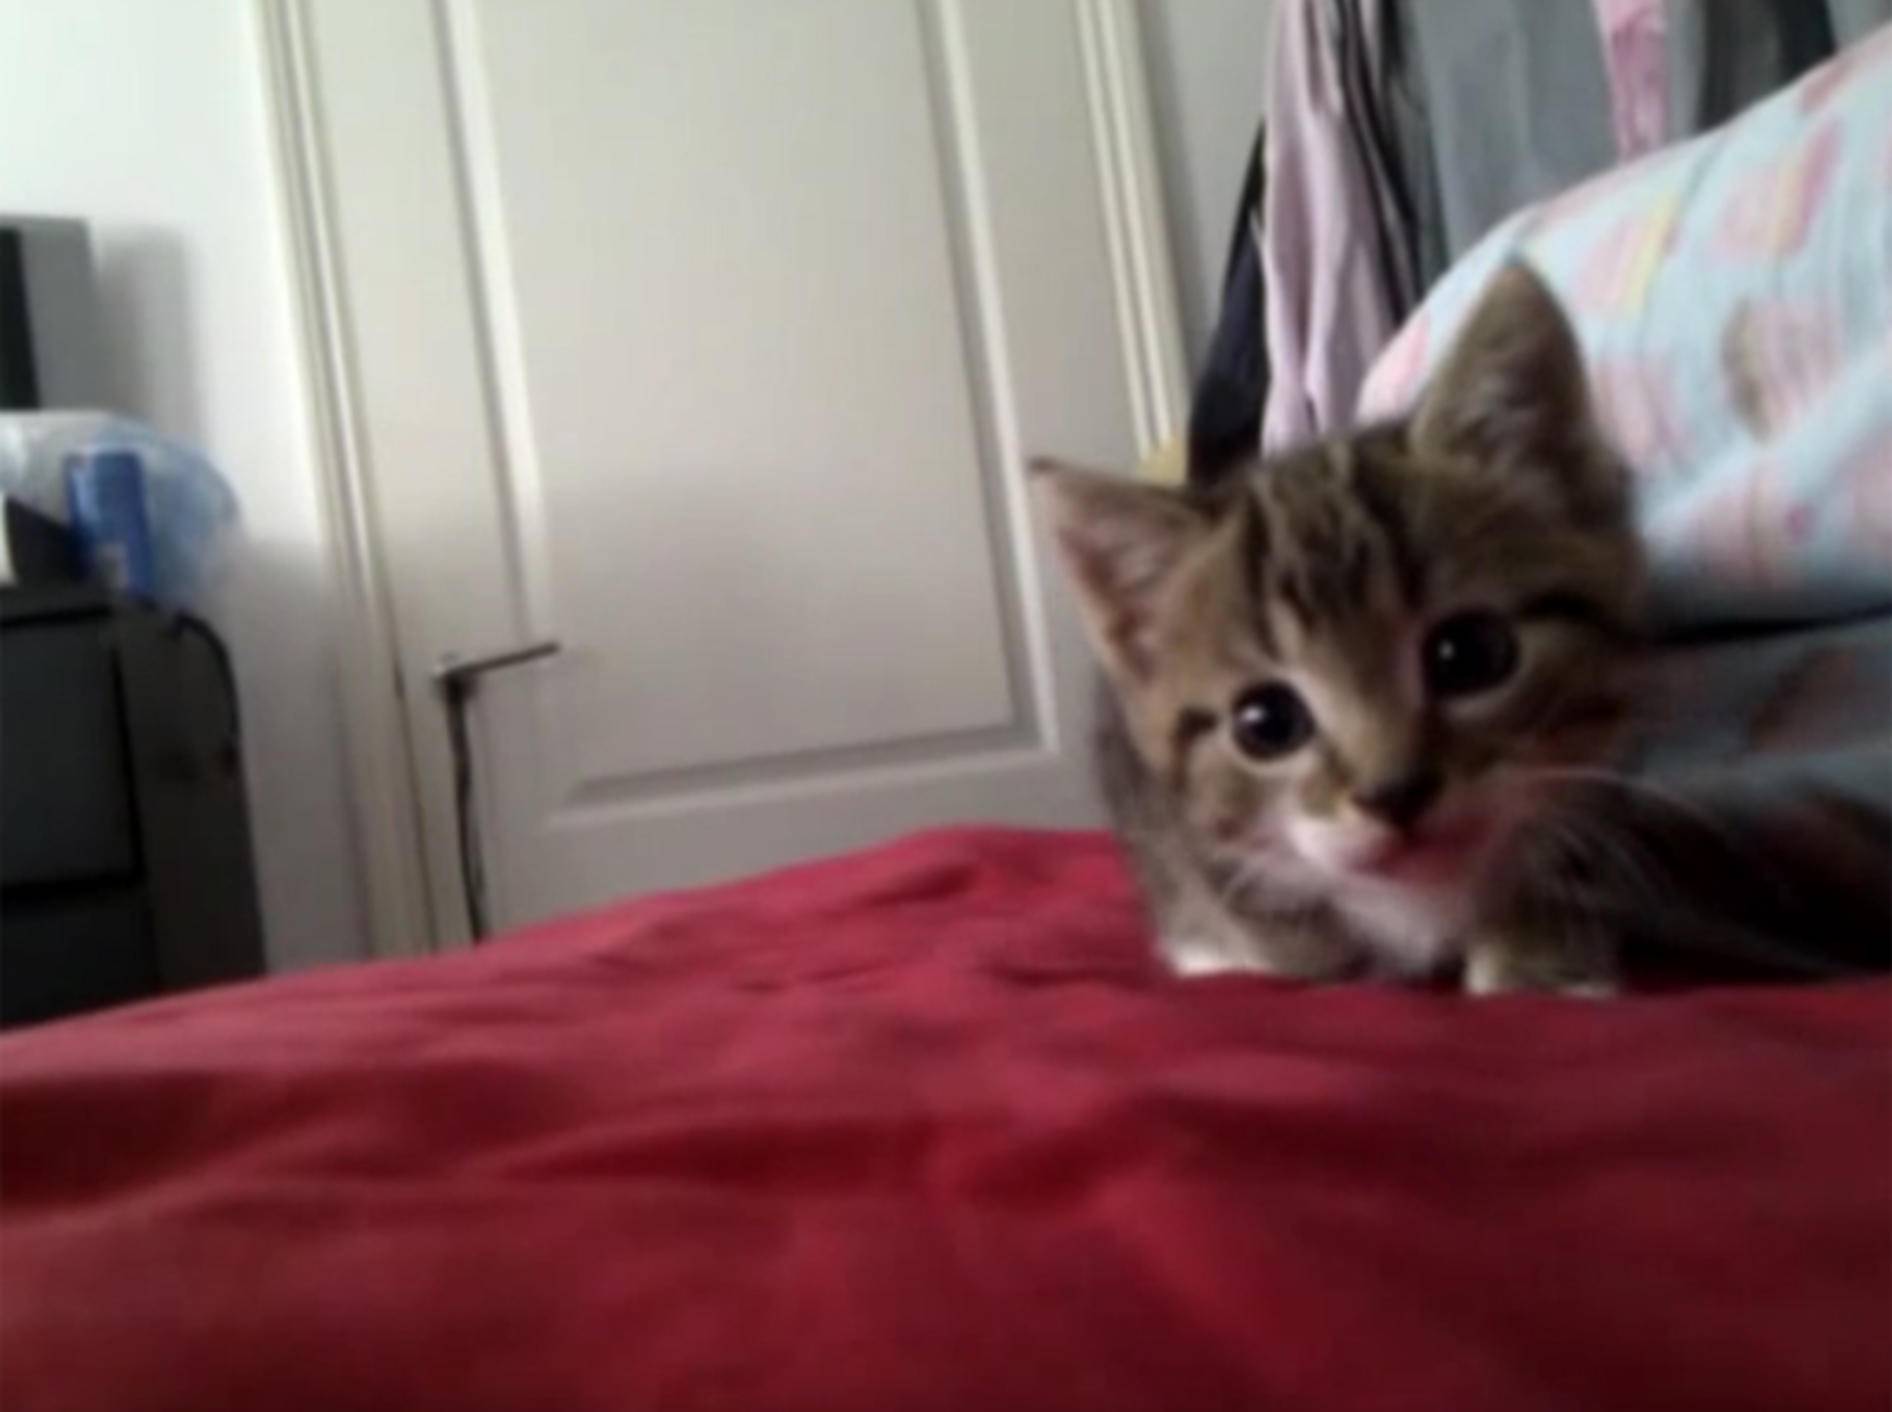 Baby-Katze Muffin schleicht sich an und attackiert Kamera – YouTube / Emma K